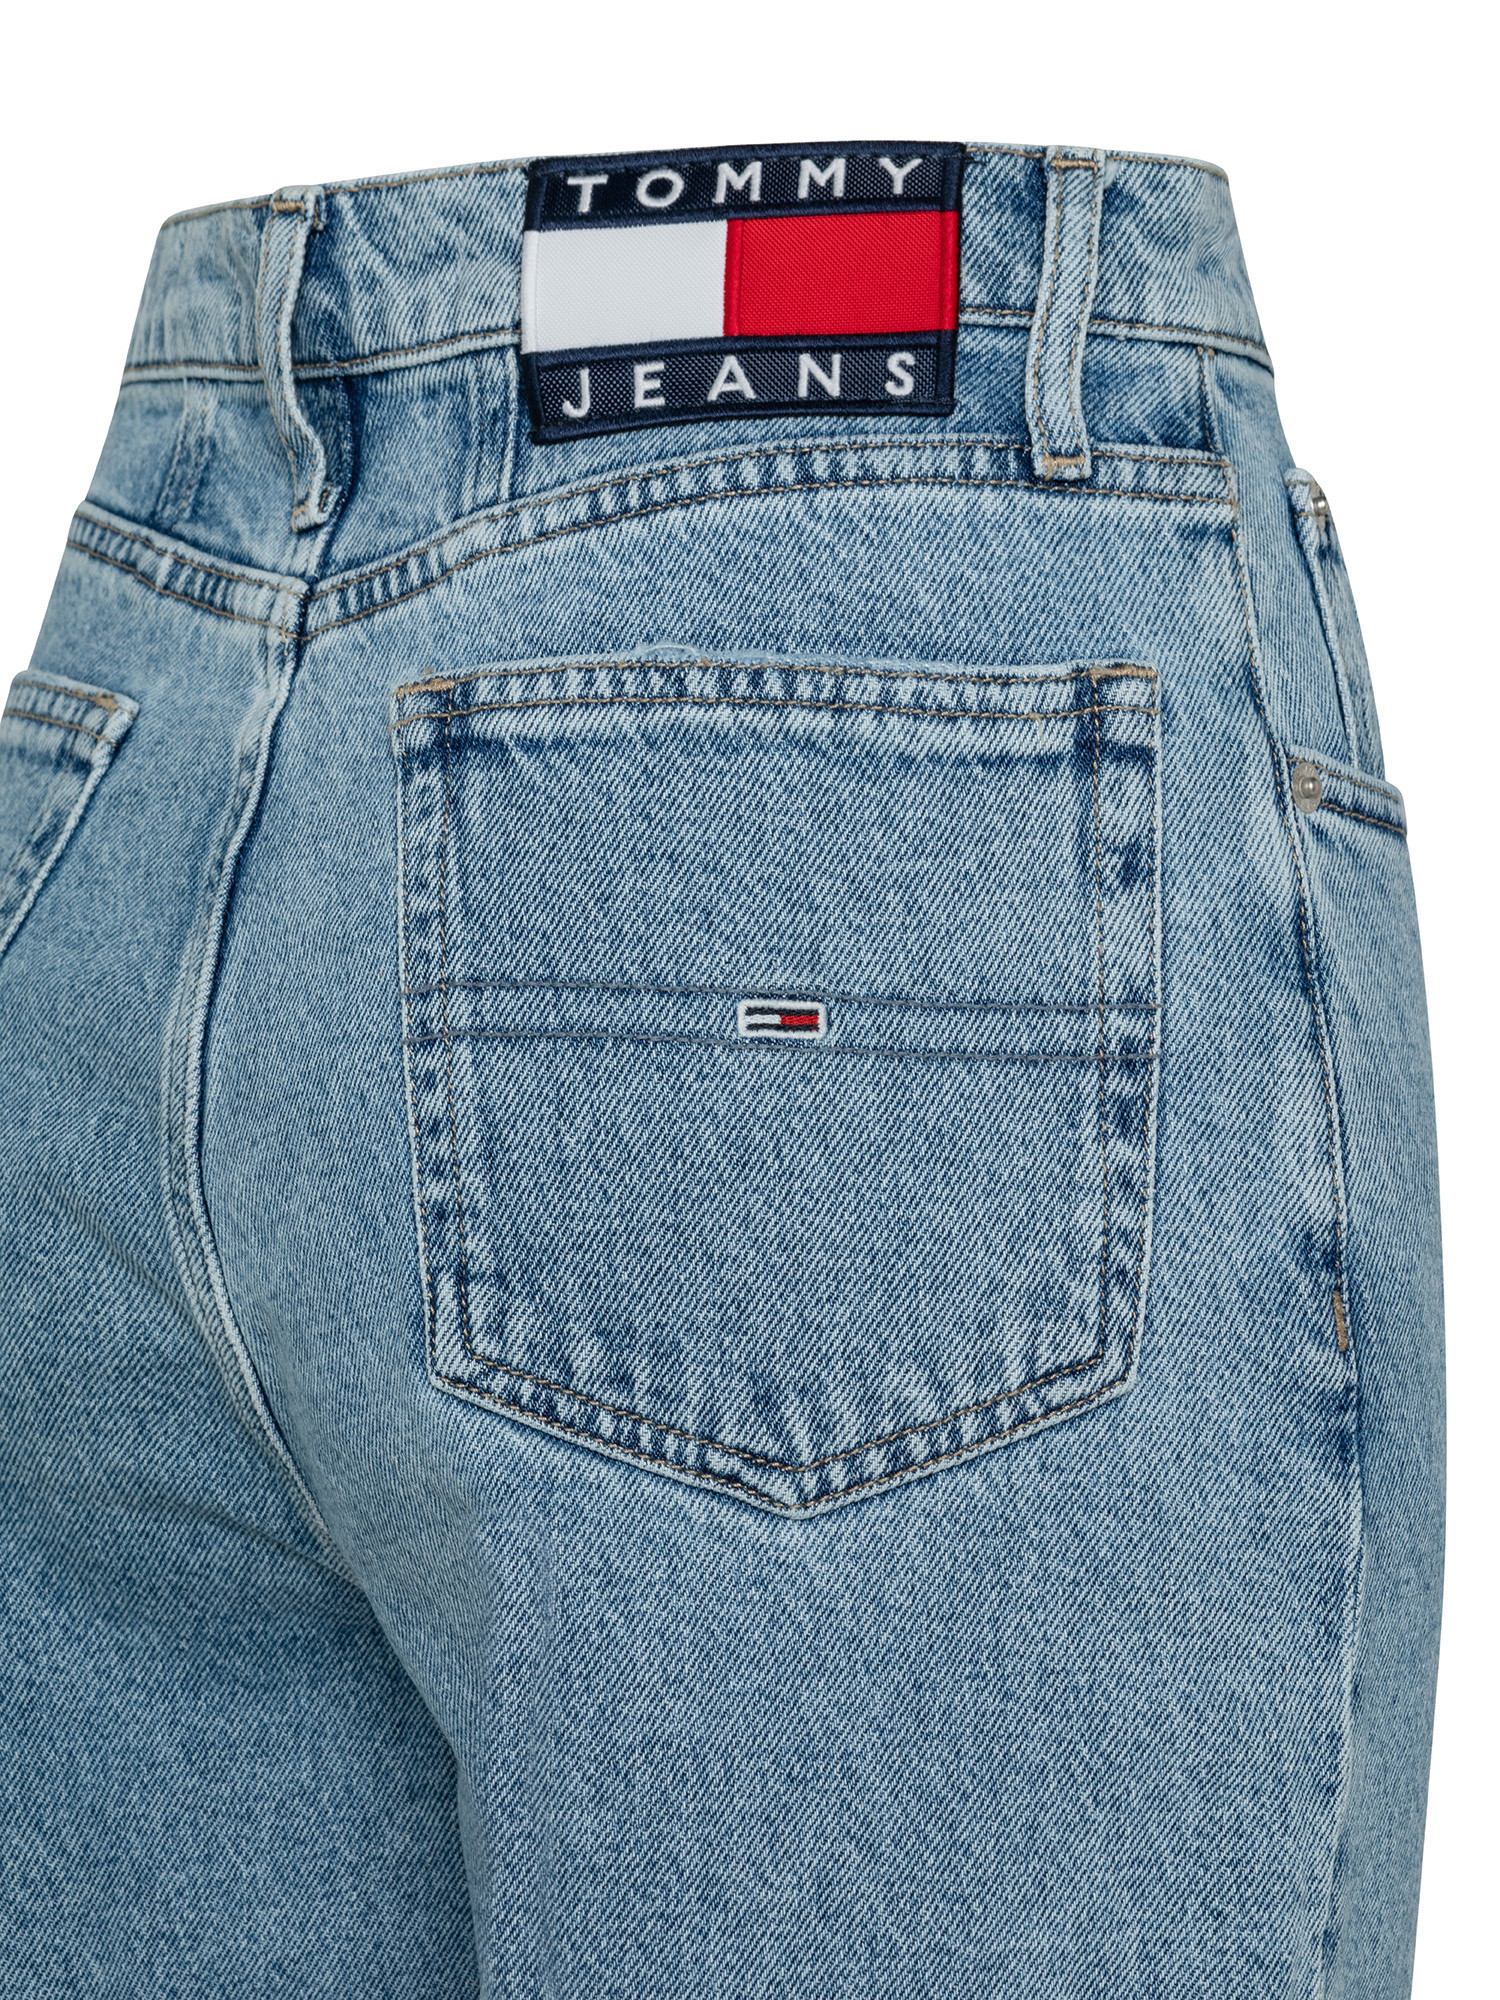 Mom jeans, Denim, large image number 2